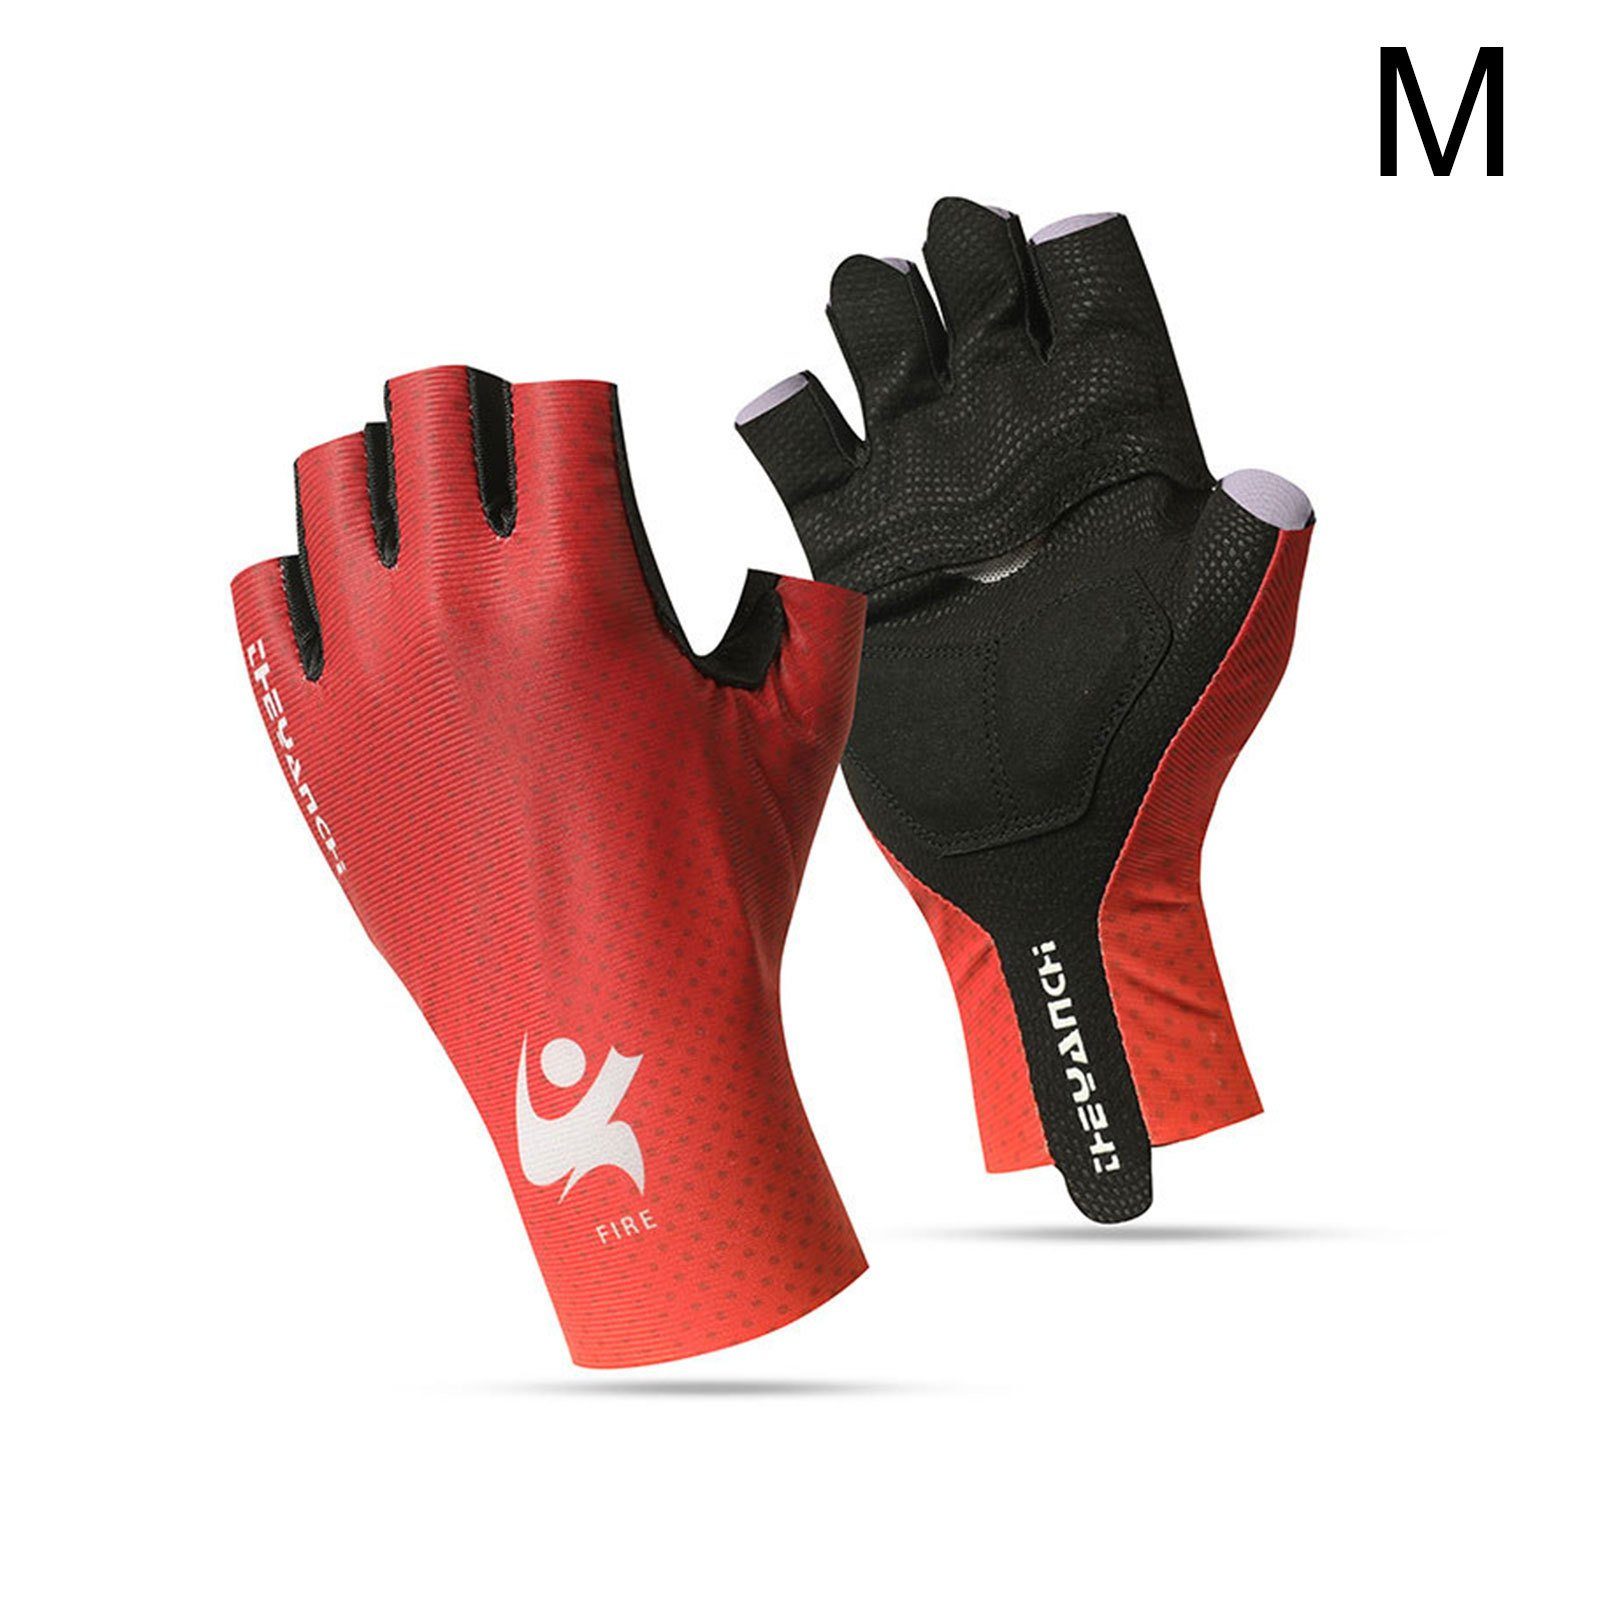 Blusmart Multisporthandschuhe Fahrradhandschuhe Halbfinger-Trainingshandschuhe Rutschfeste Multisporthandschuhe Rot M